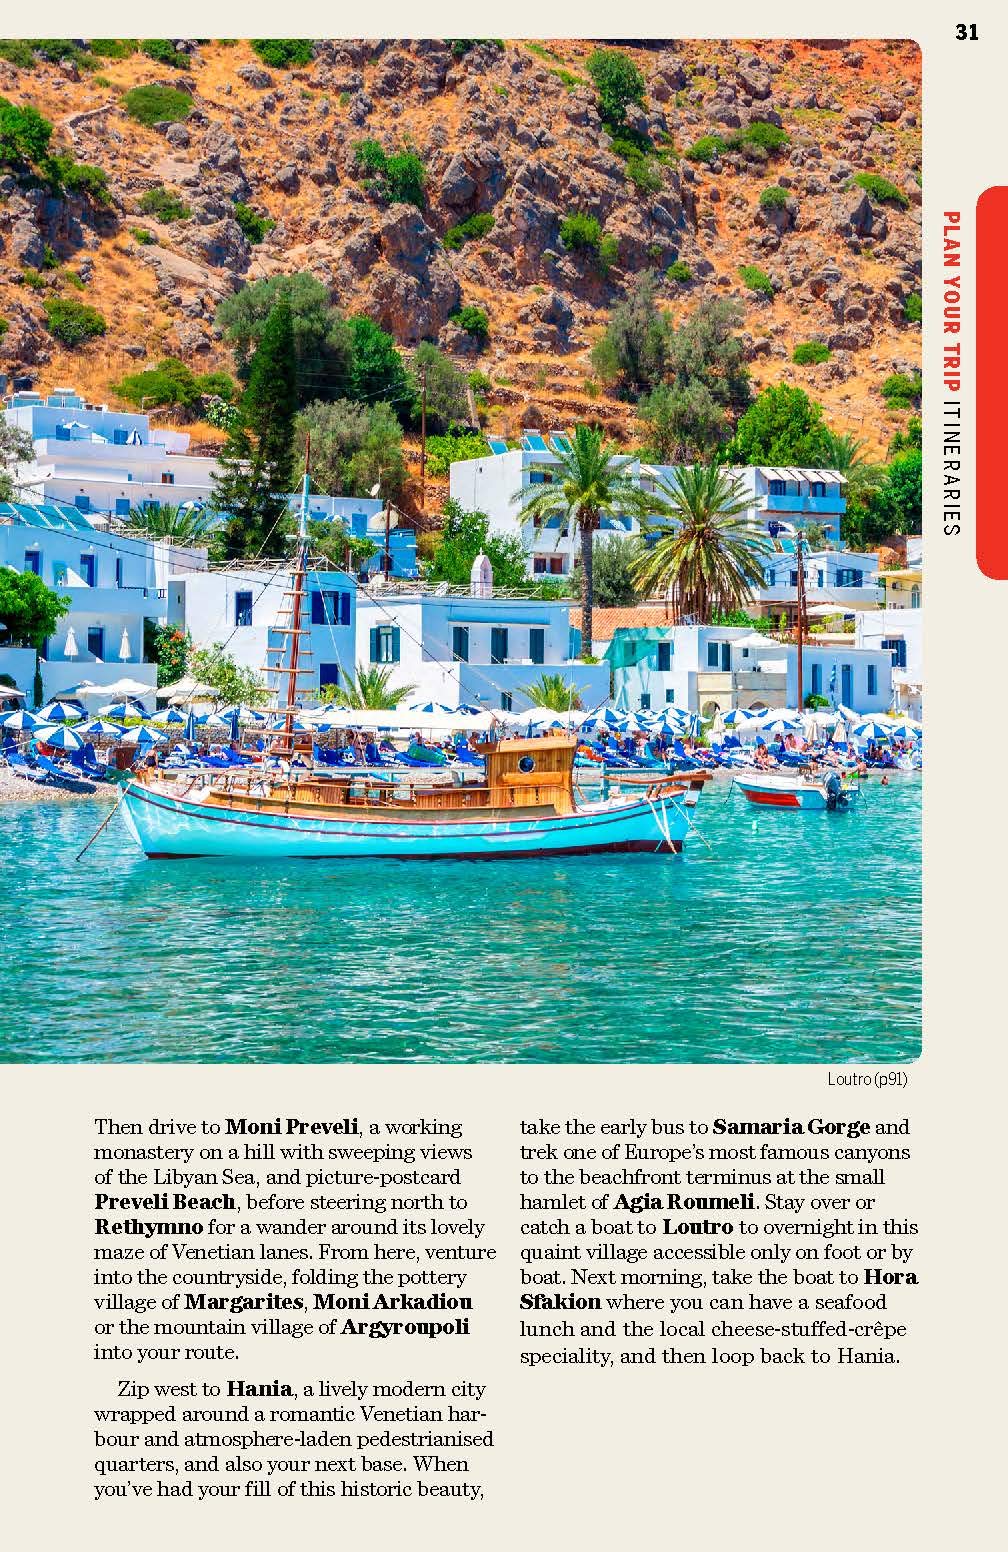 Guide de voyage (en anglais) - Crete | Lonely Planet guide de voyage Lonely Planet 